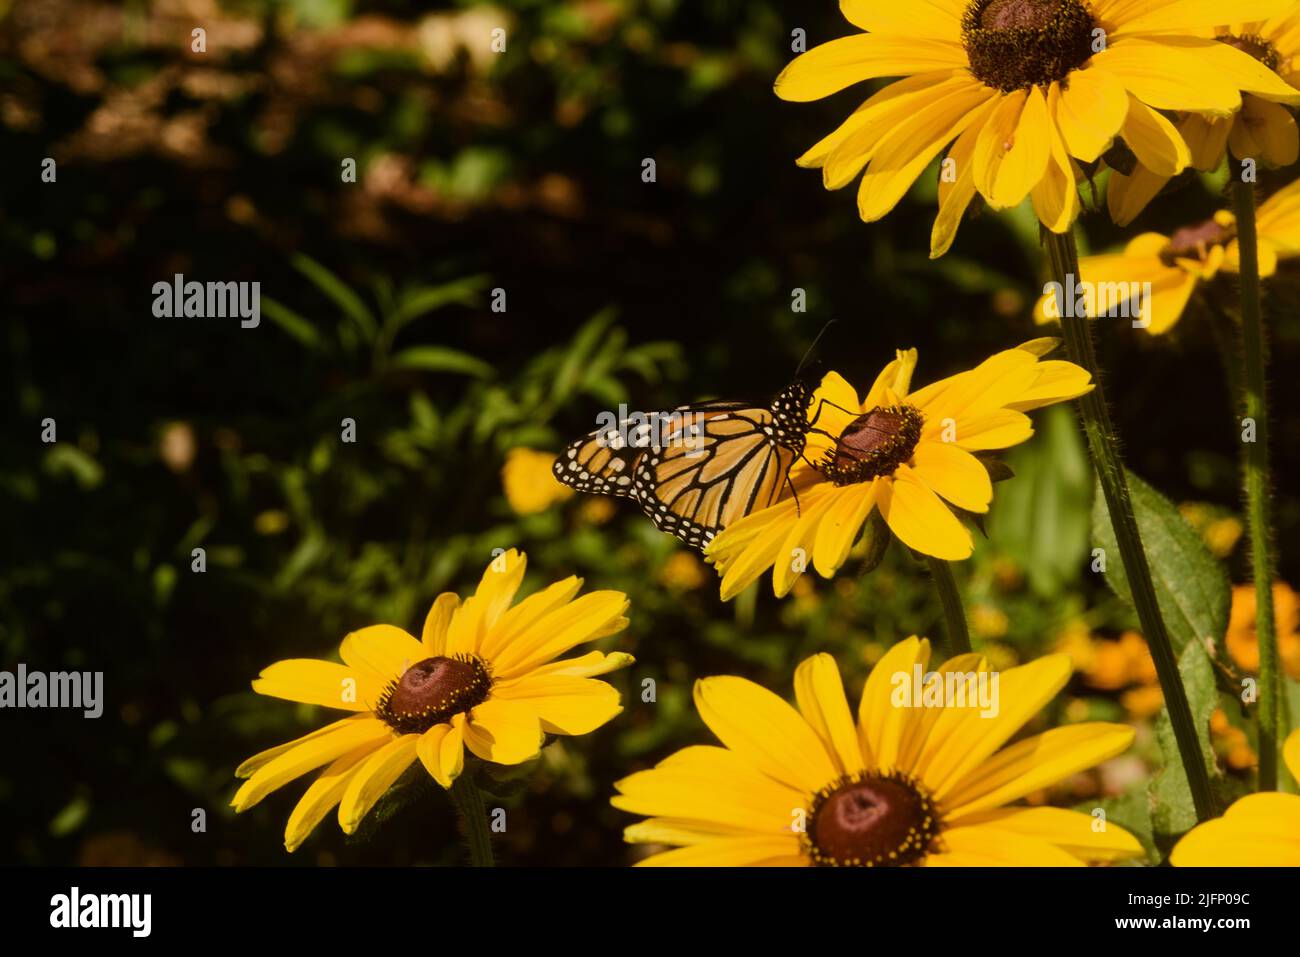 Das farbenfrohe Leben im Garten, Nahaufnahme eines Schmetterlings, der die schwarze Susan-Blüte bestäubt. Reiche n Muster, Linien, Form, Form und Farbe Stockfoto